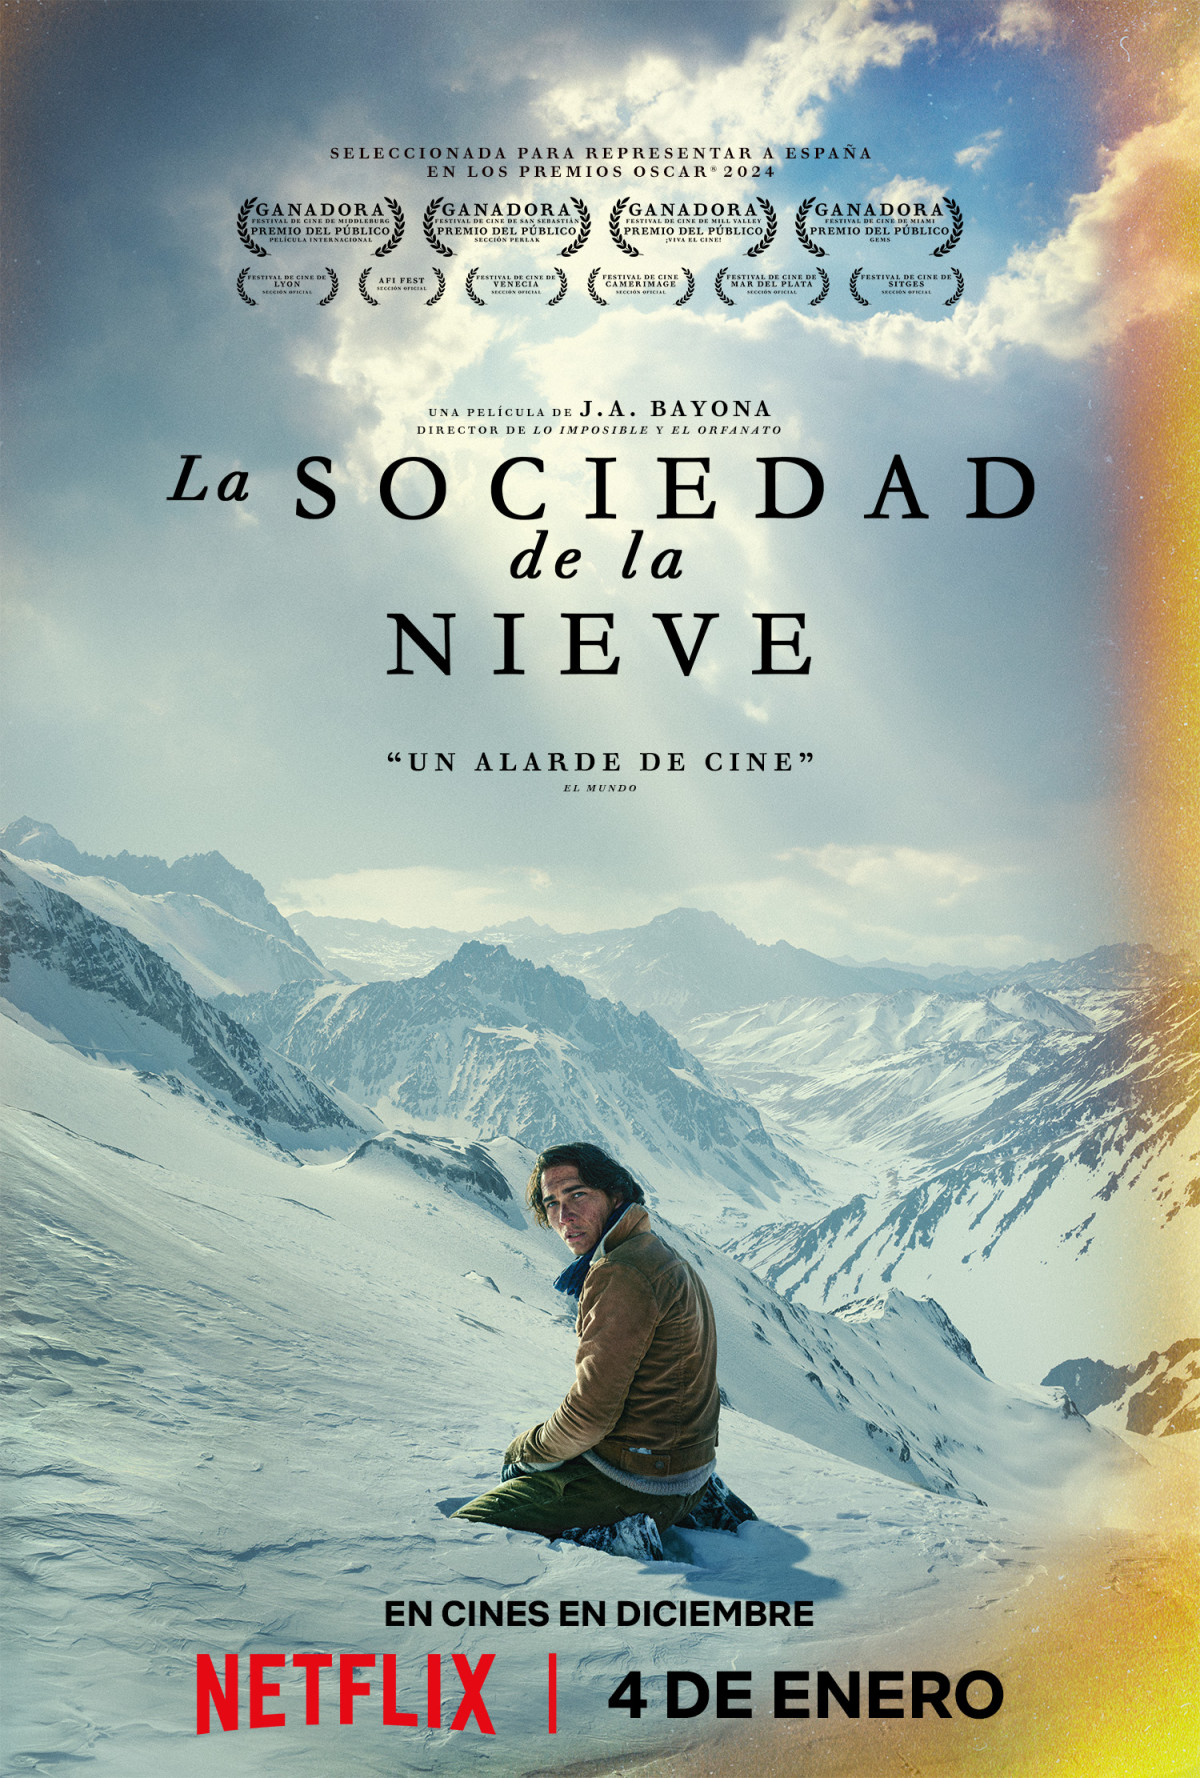 La sociedad de la nieve: ARRIBA EN LA CORDILLERA, El libro mejor